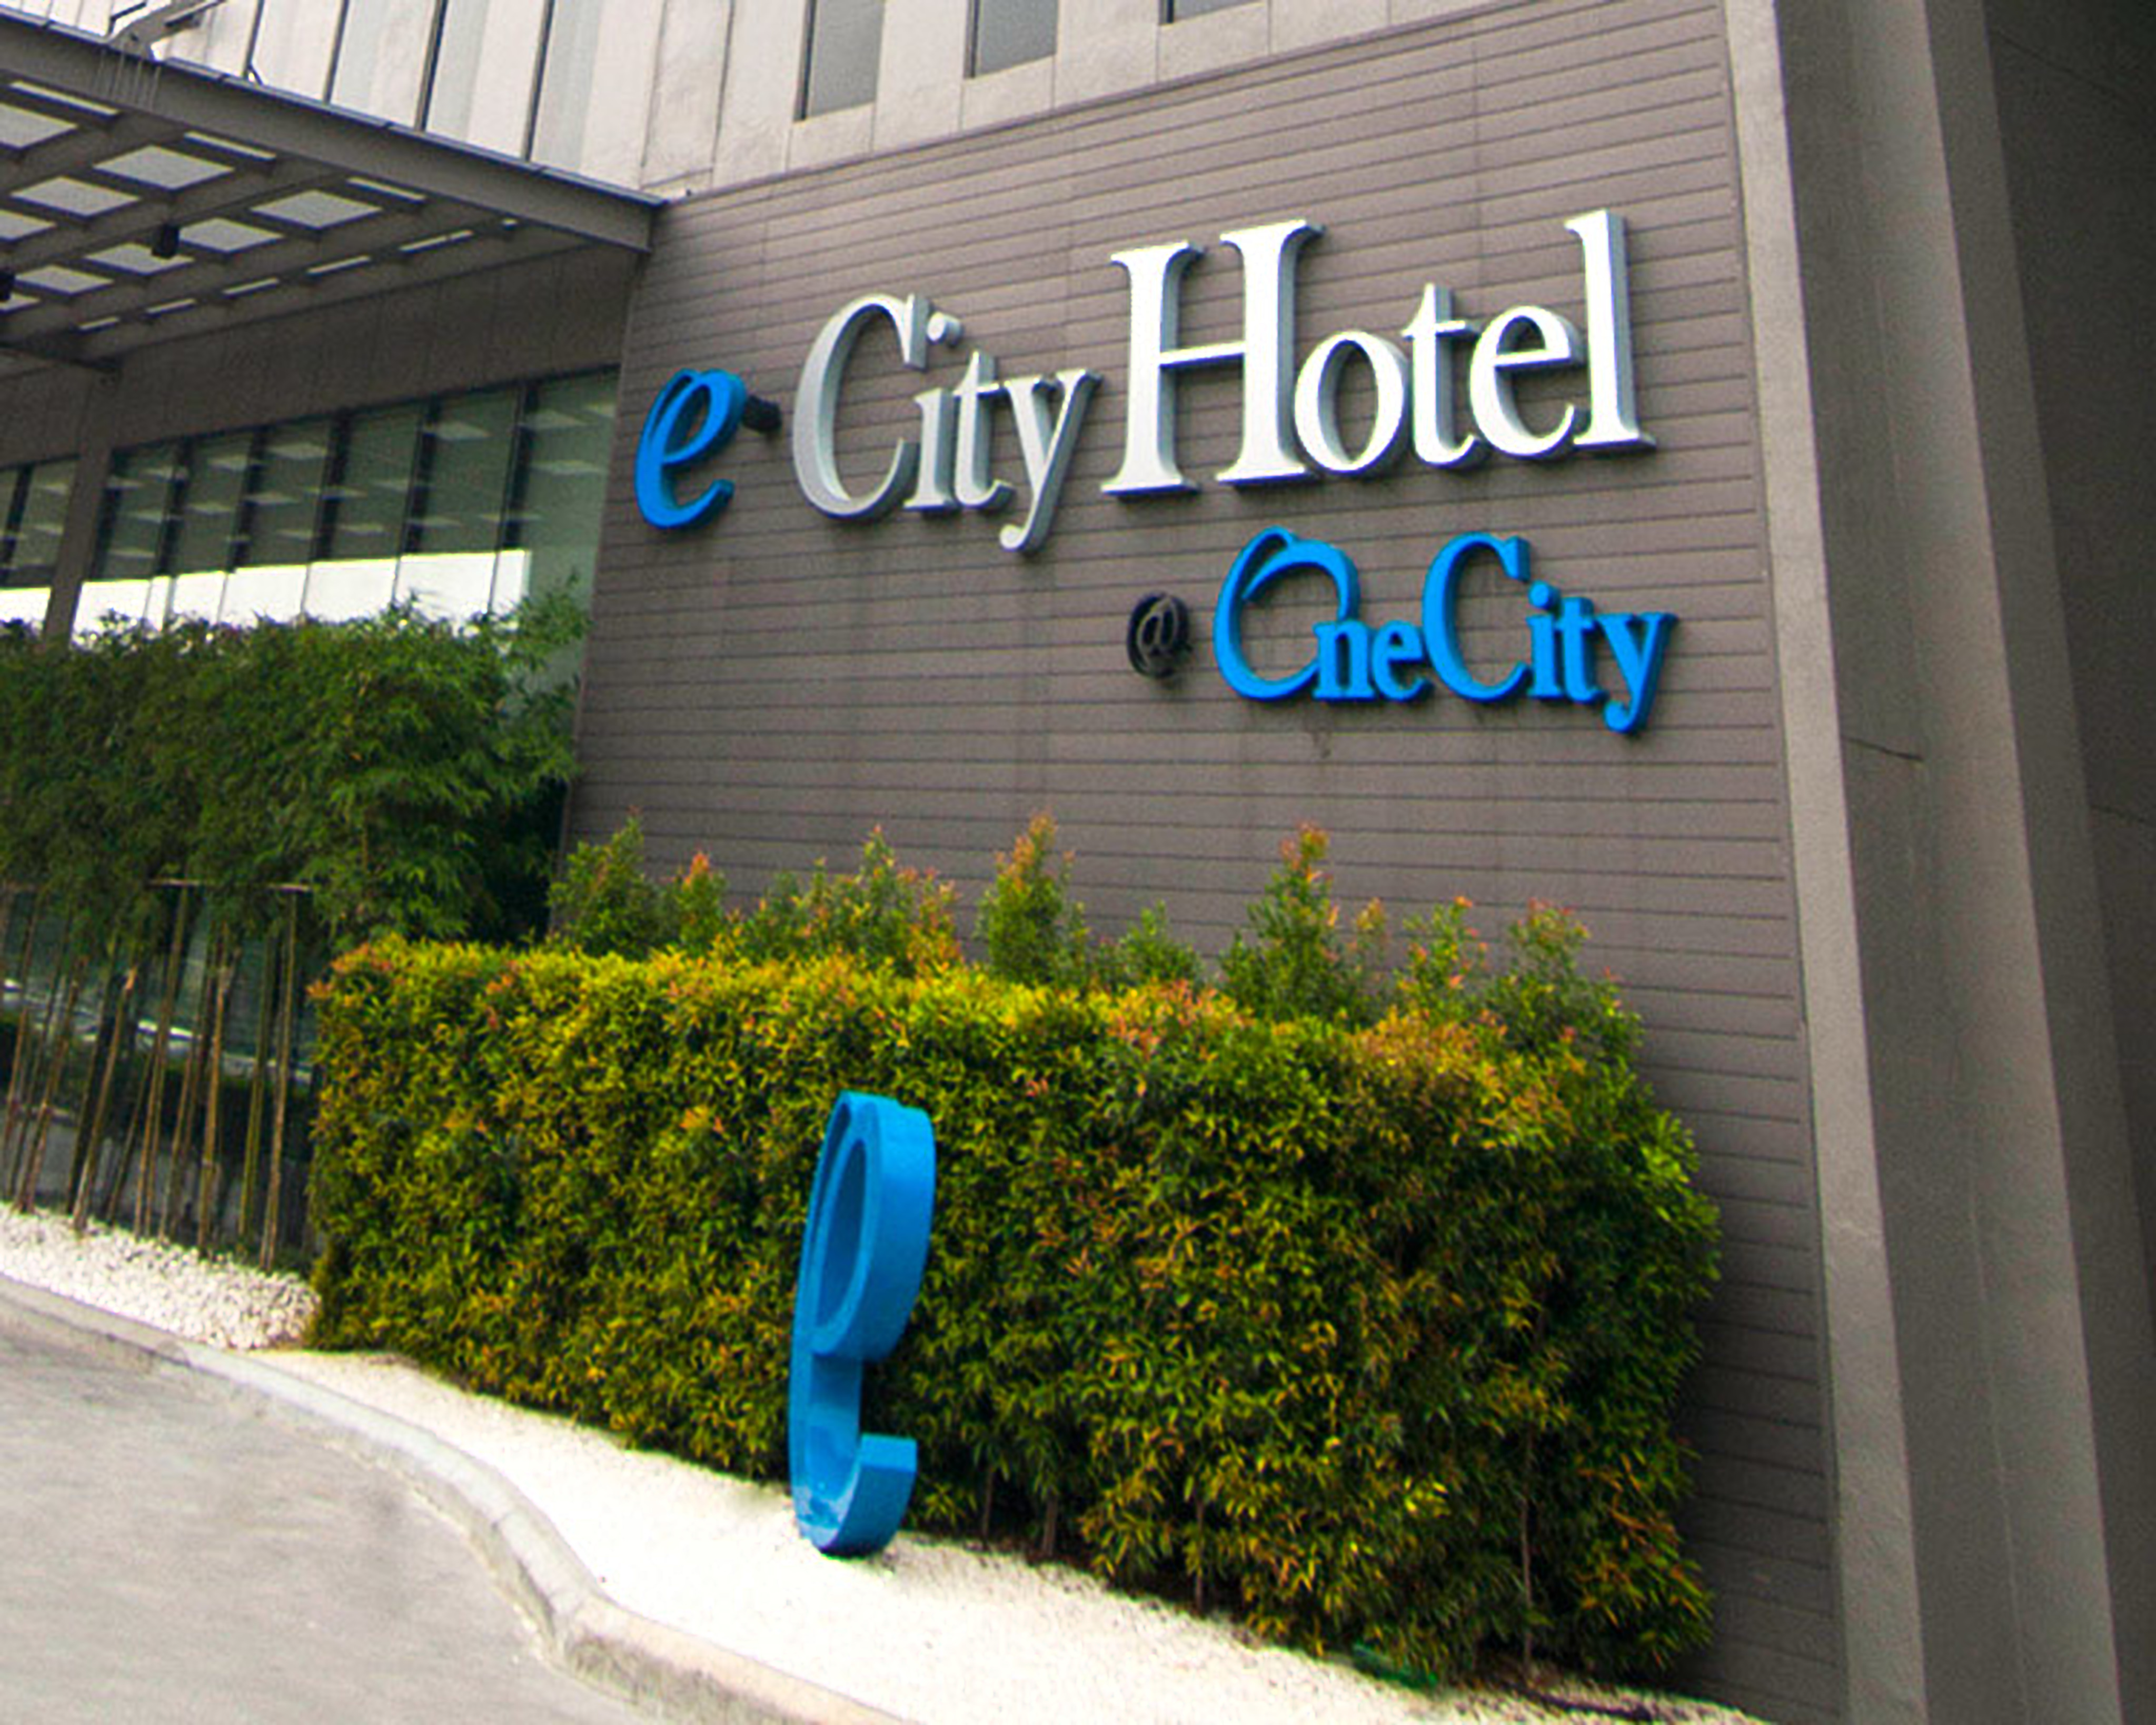 e.City Hotel at OneCity